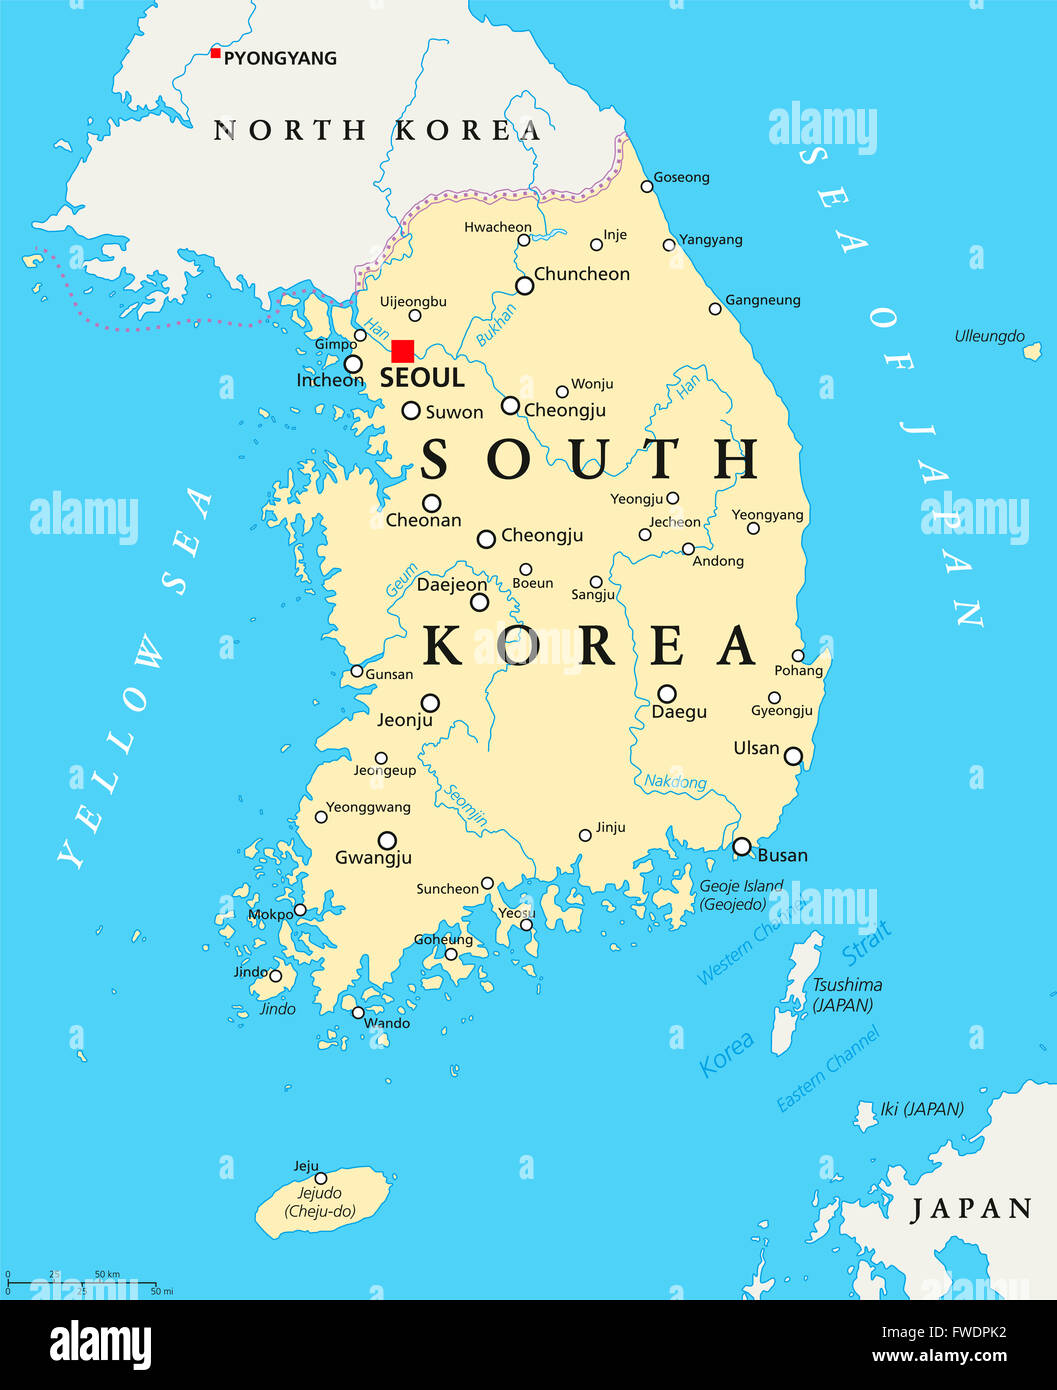 Corea del Sud mappa politico con capitale Seoul, confini nazionali importanti città, fiumi e laghi. Etichetta inglese e la scalabilità Foto Stock